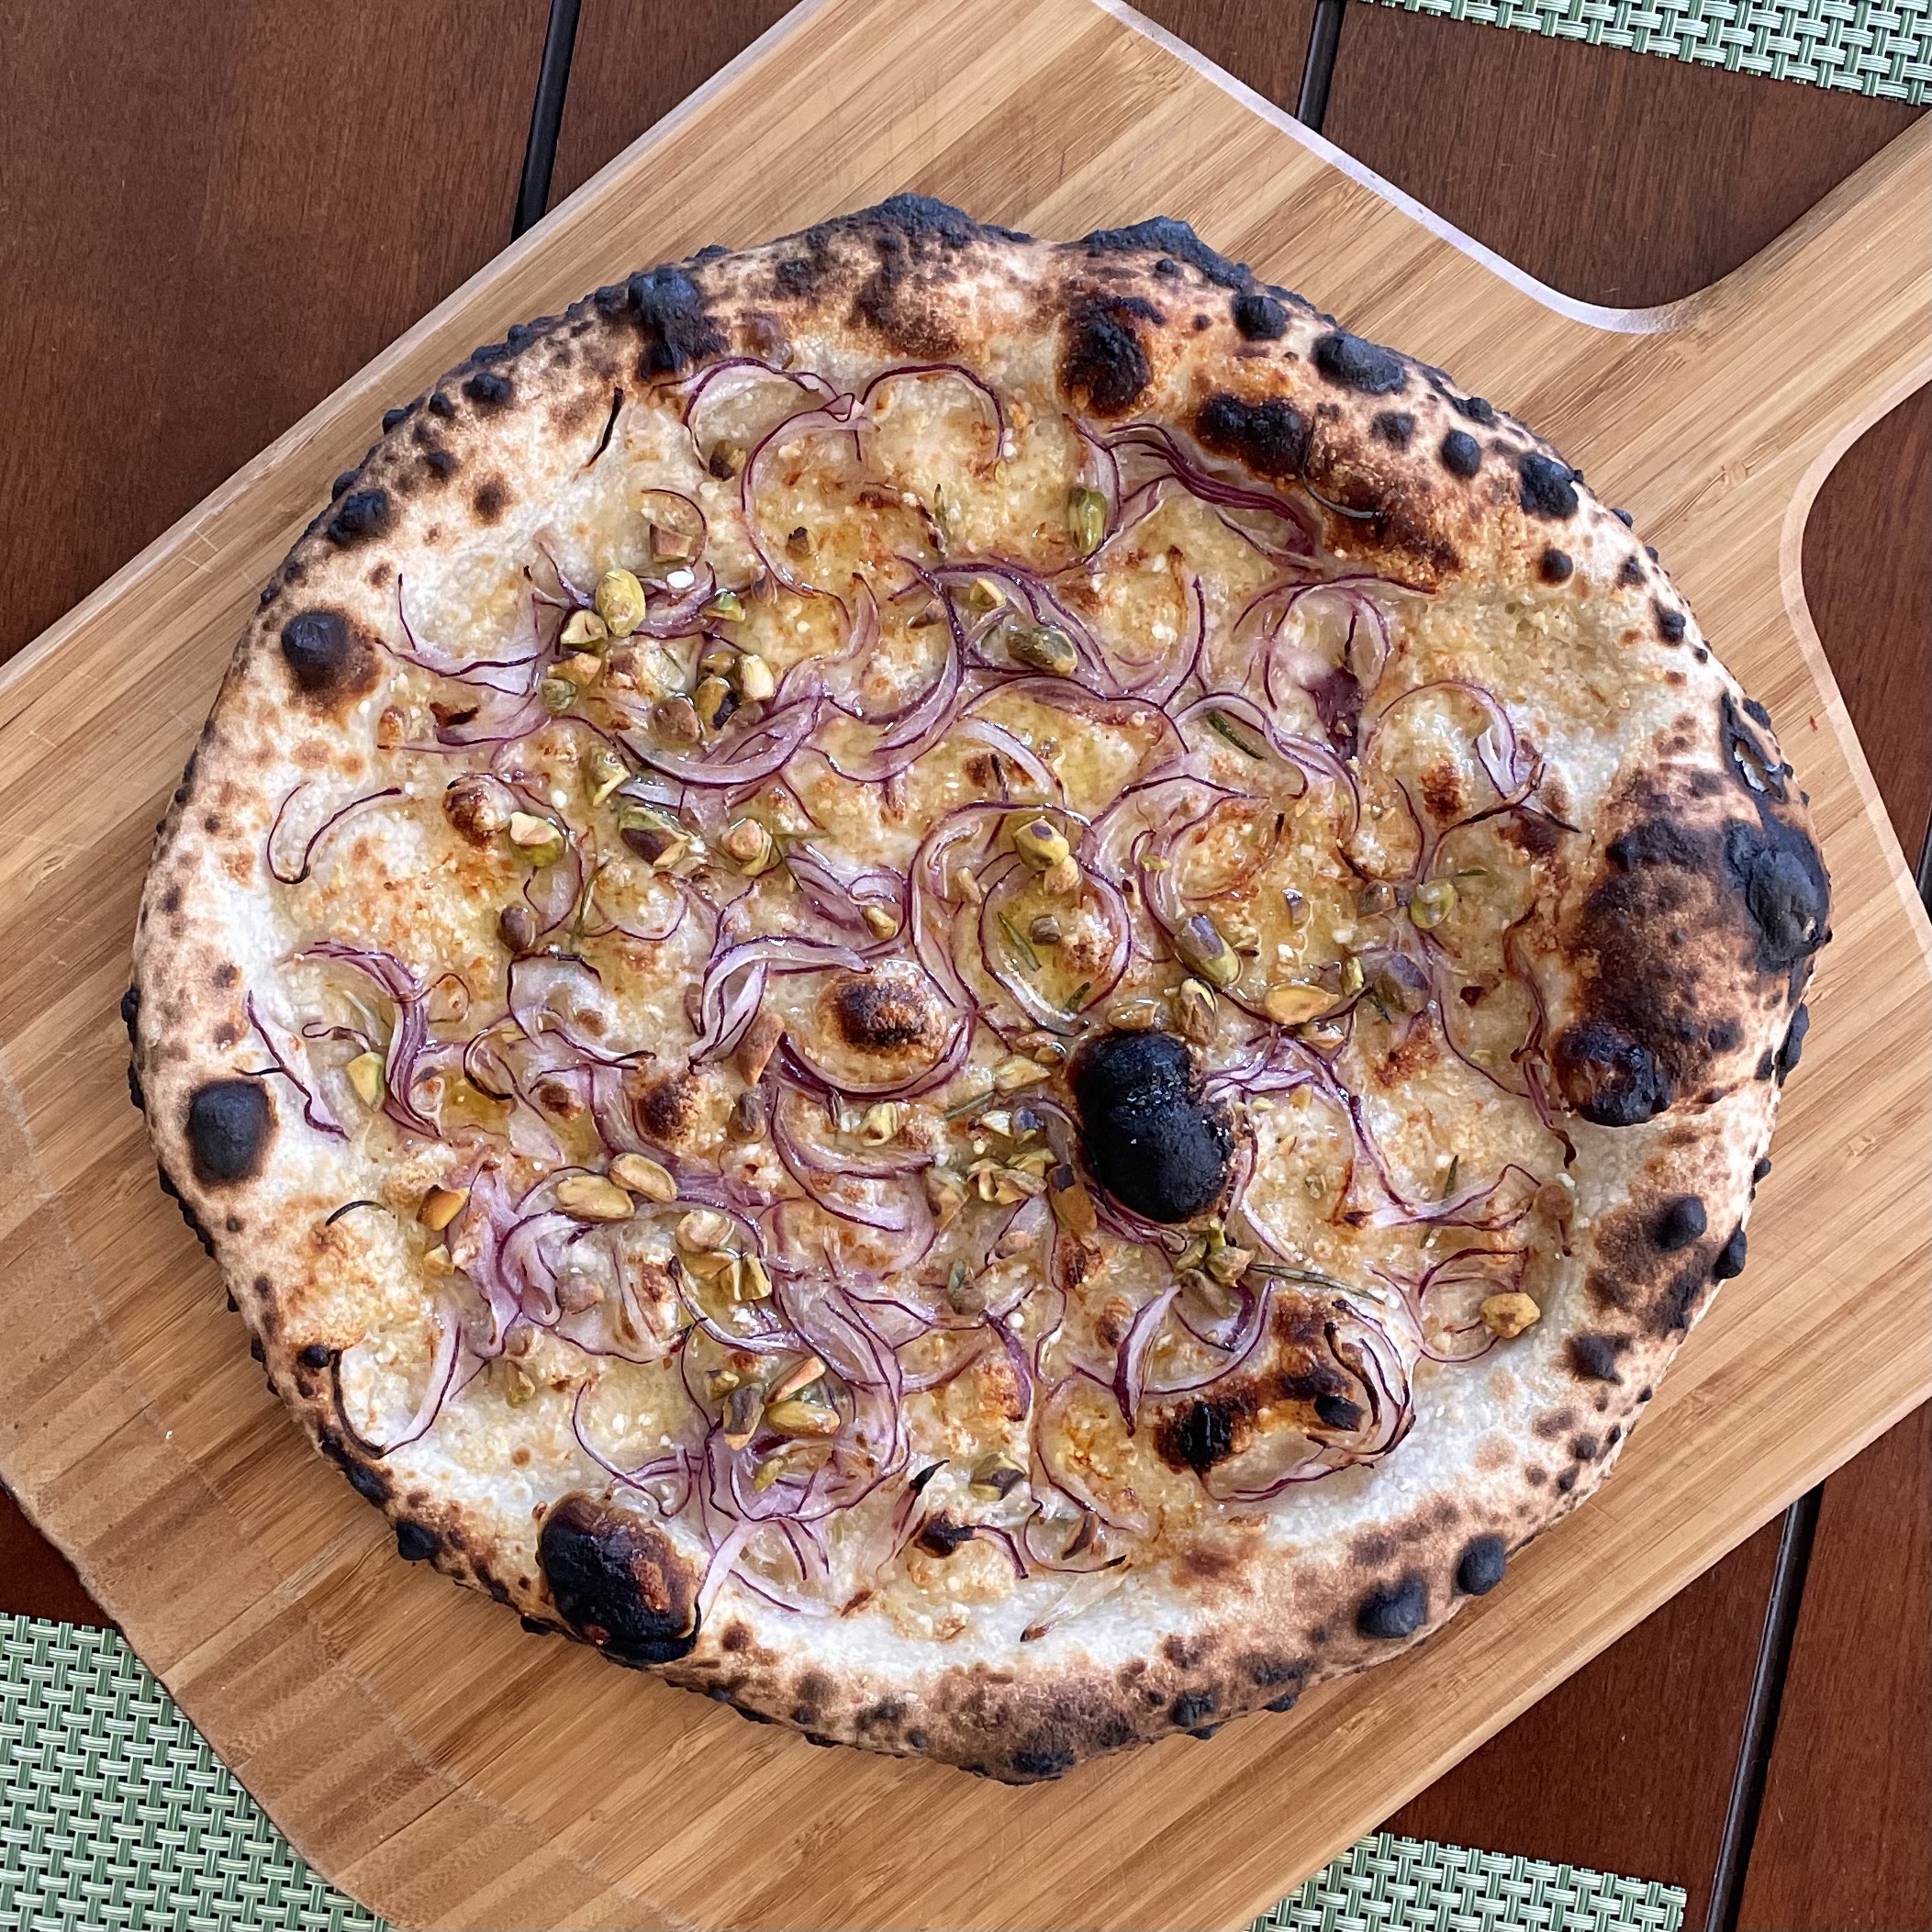 Chris Bianco's Pizza Rosa in the Ooni Pizza Oven - Santa Barbara Baker